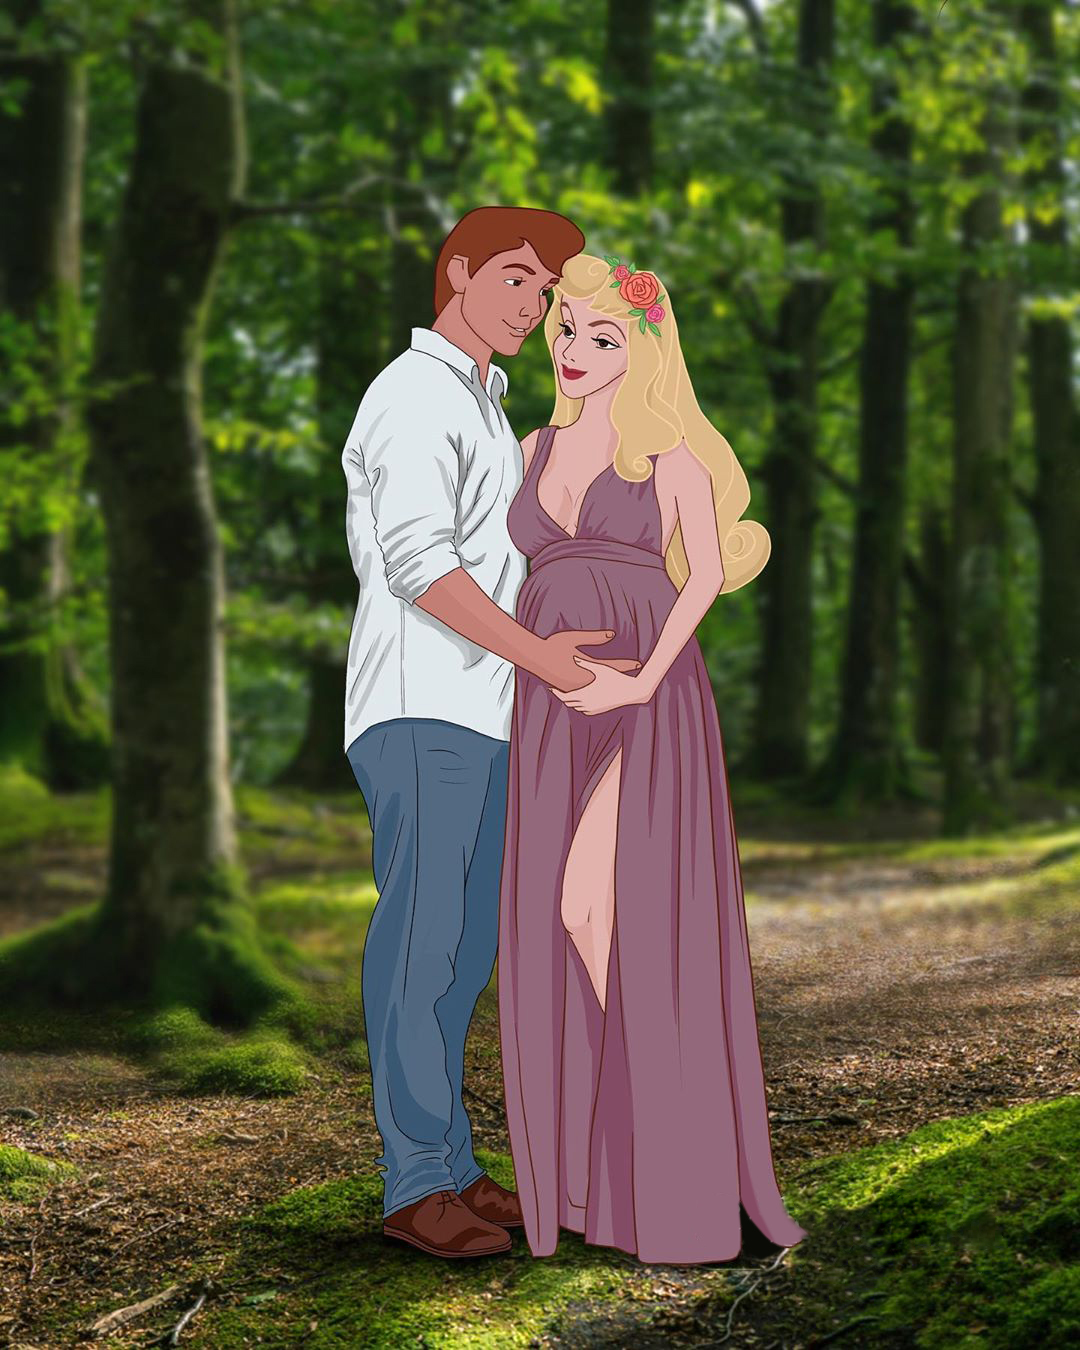 Como seriam as princesas da Disney grávidas? Artista russa cria ilustrações  - 22/04/2020 - UOL Universa